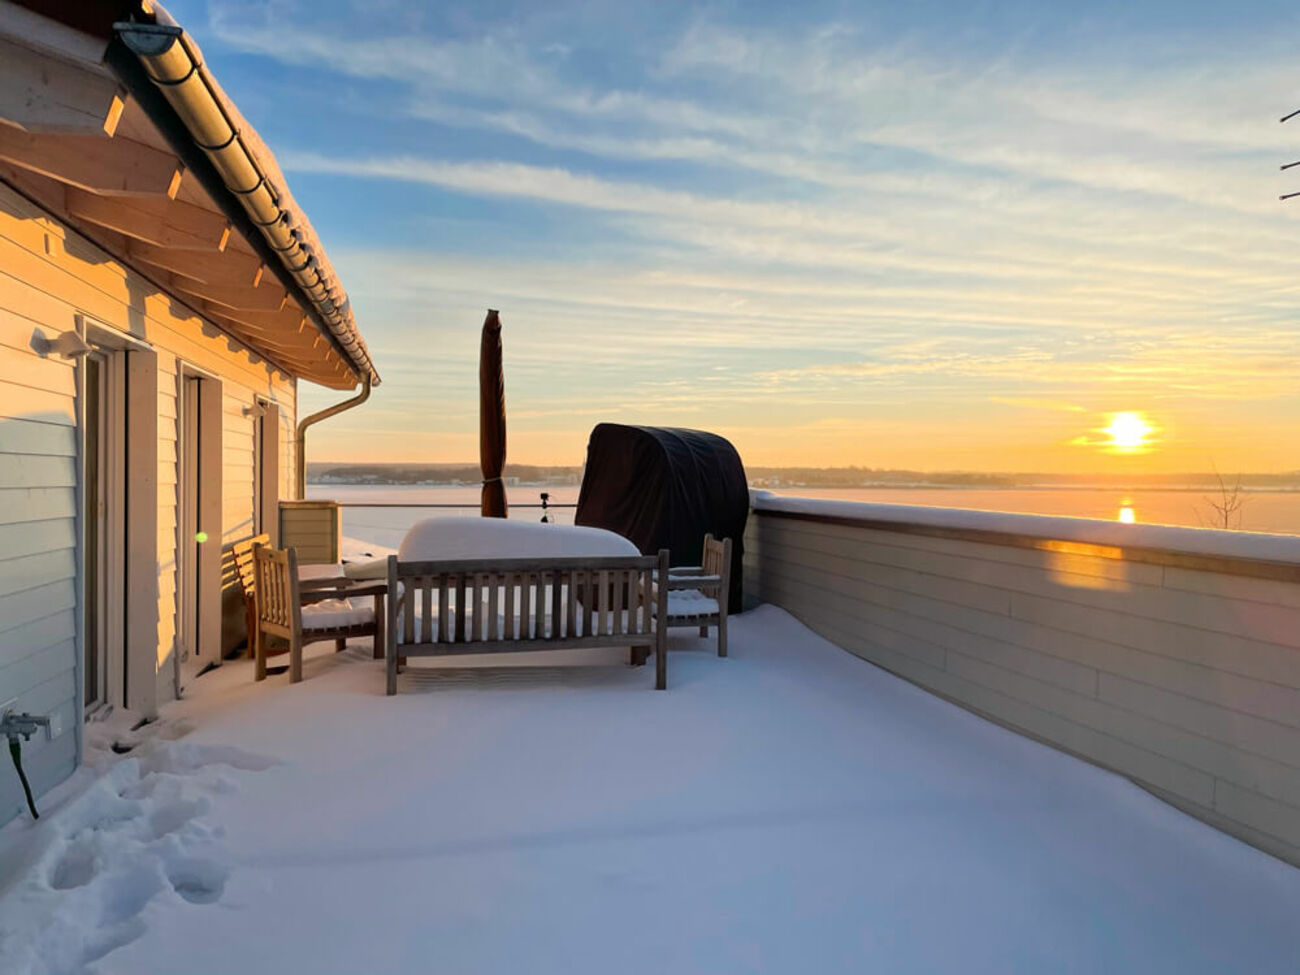 Wohnung 4: Traumhafte Schneelandschaft auf der Dachterrasse. Sonnenuntergang über dem Hainer See.